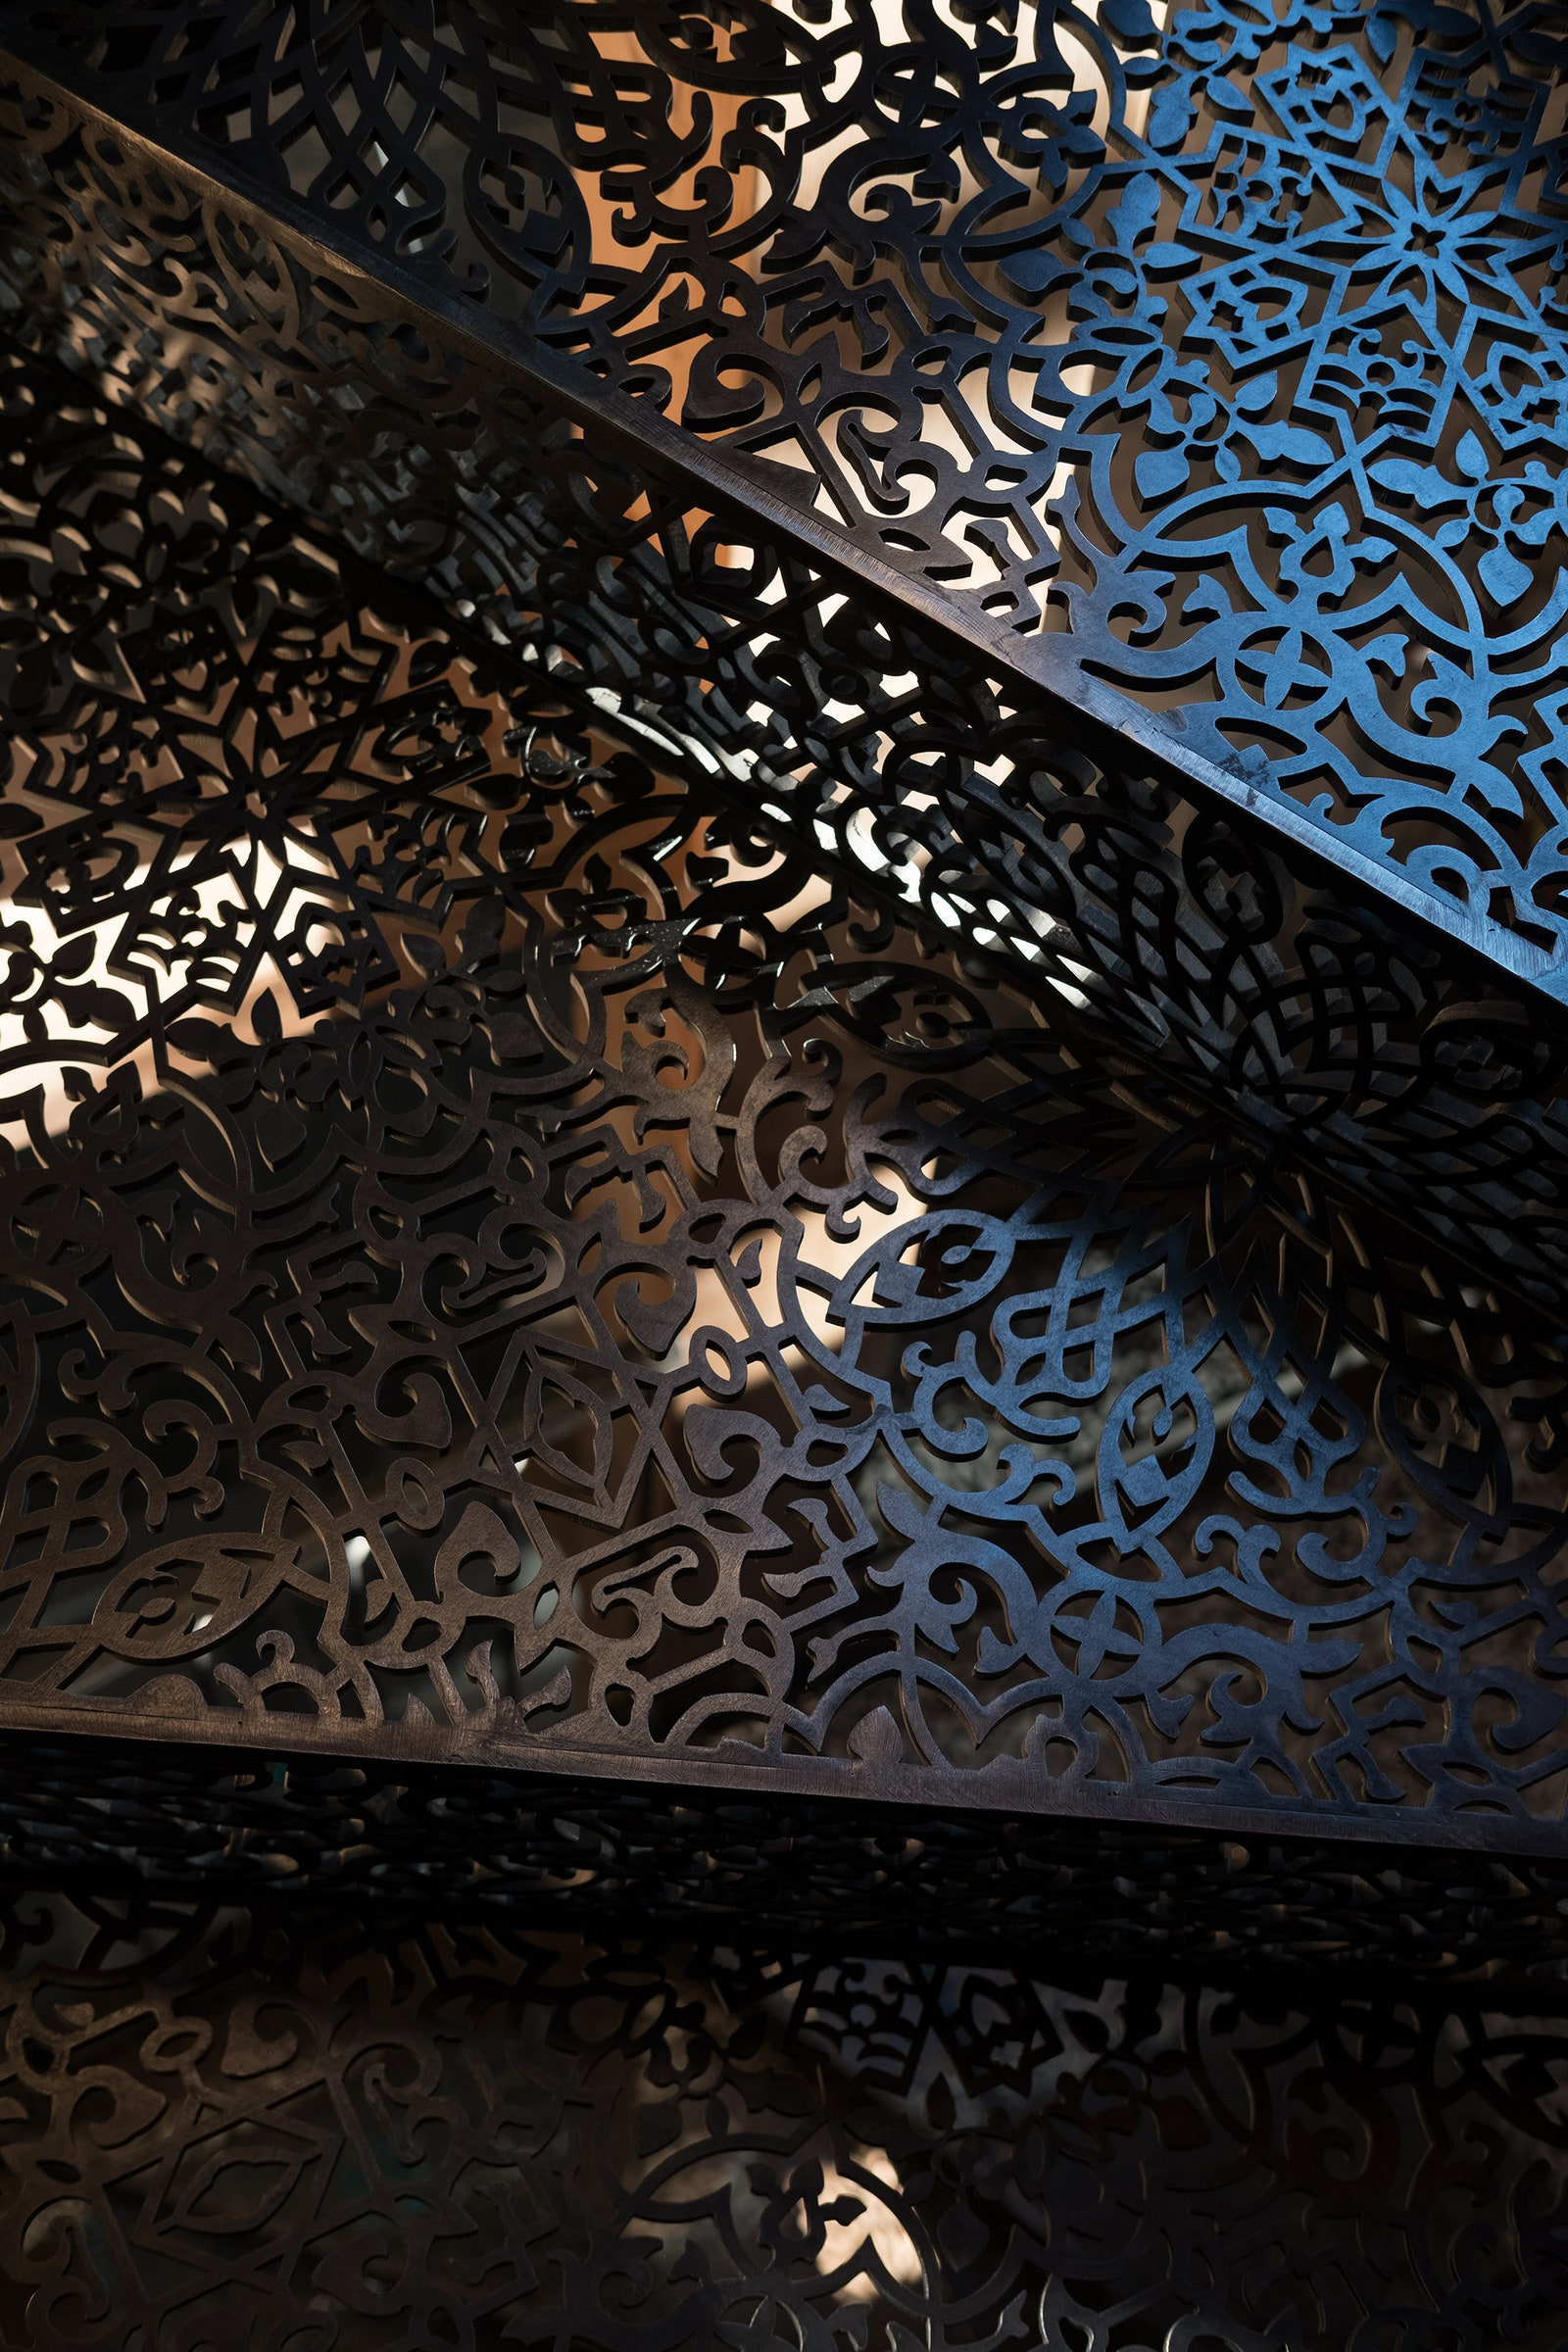 Ажурная лестница изготовлена методом лазерной резки по дизайну Штефана.